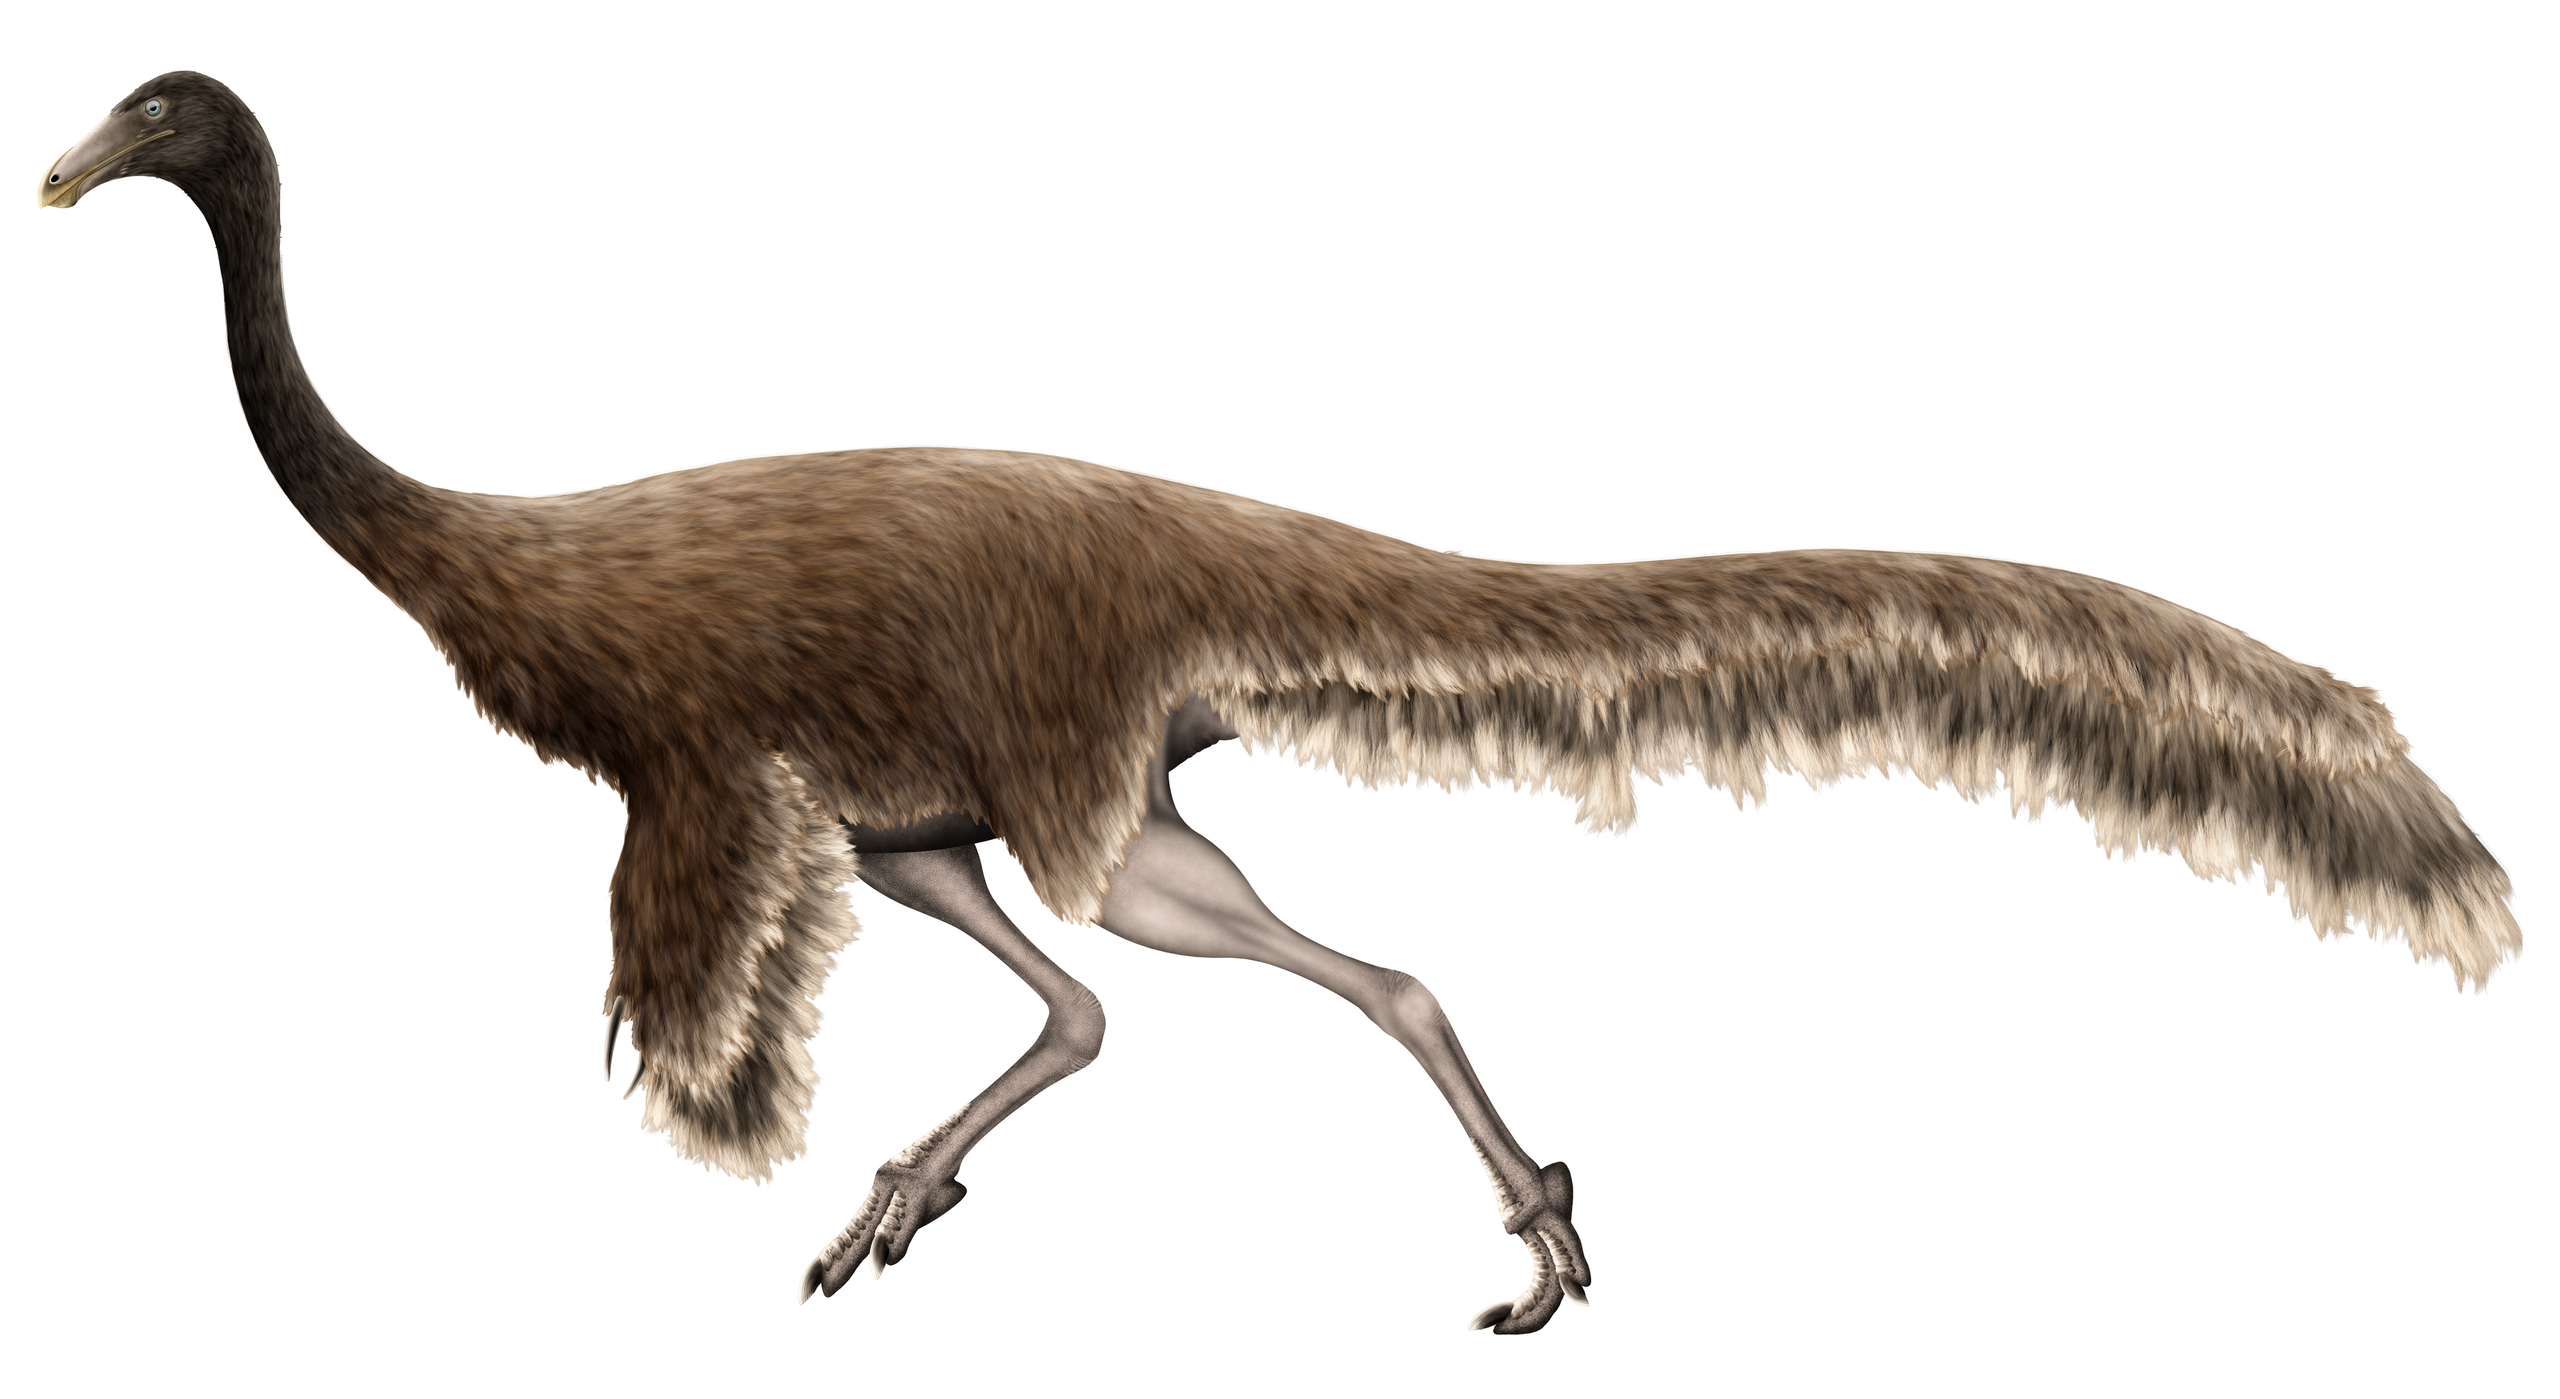 Tělesné proporce i délka nohou dávají už na první pohled tušit, že ornitomimidi byli skutečně velmi rychlými tvory. To dokazuje například i zde zobrazený zástupce této skupiny, formálně popsaný v roce 2011 jako Qiupalong henanensis. Tento geograficky